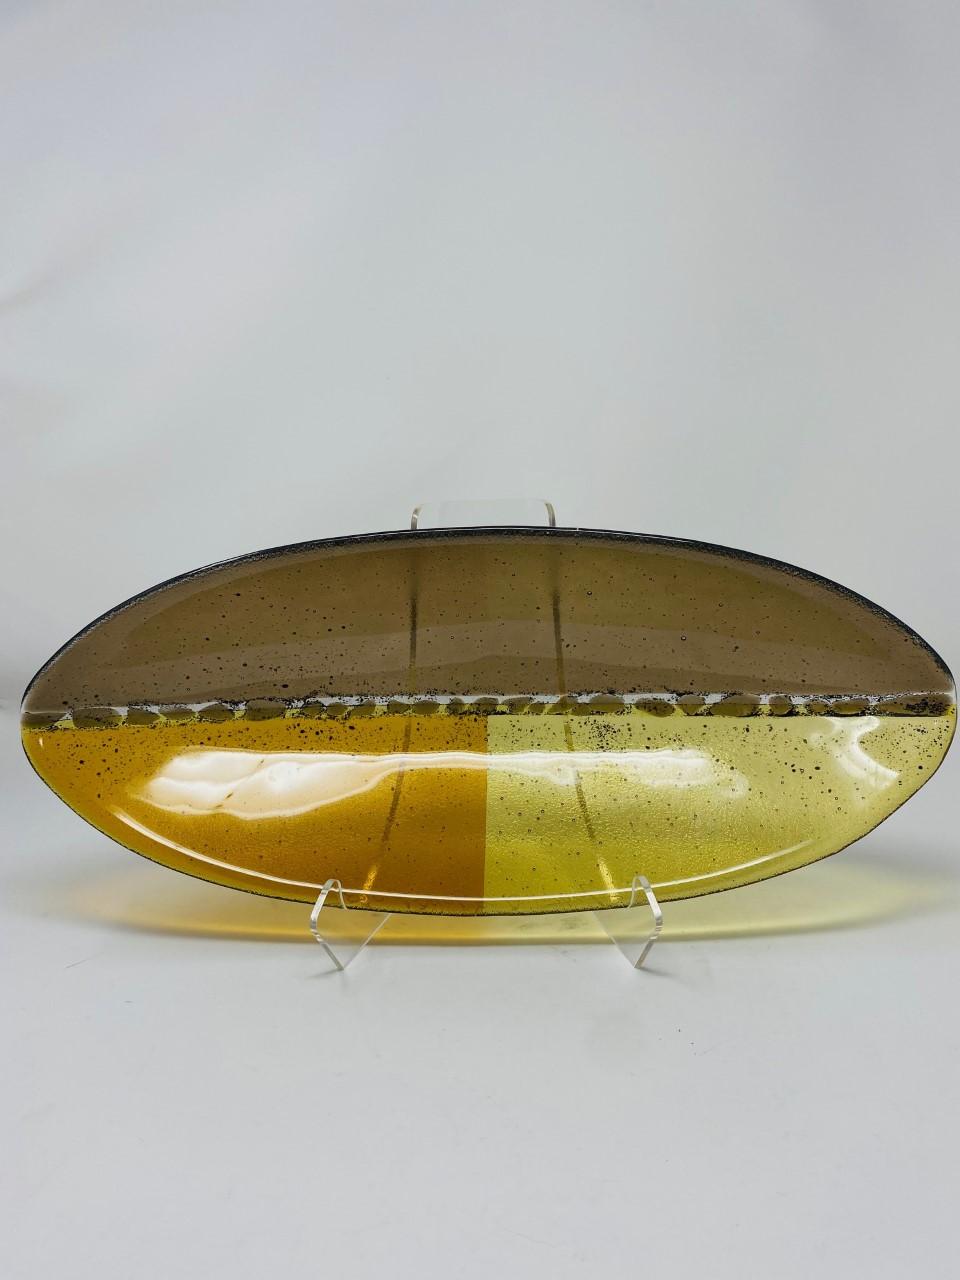 Magnifique et graphique bol d'art en verre ovale de Rosenthal. Cette belle pièce de la fin des années 90 est graphique et détaillée. Il présente des tons jaunes et ambrés ainsi qu'un violet fumé dans une forme semblable à celle d'un canoë. La pièce